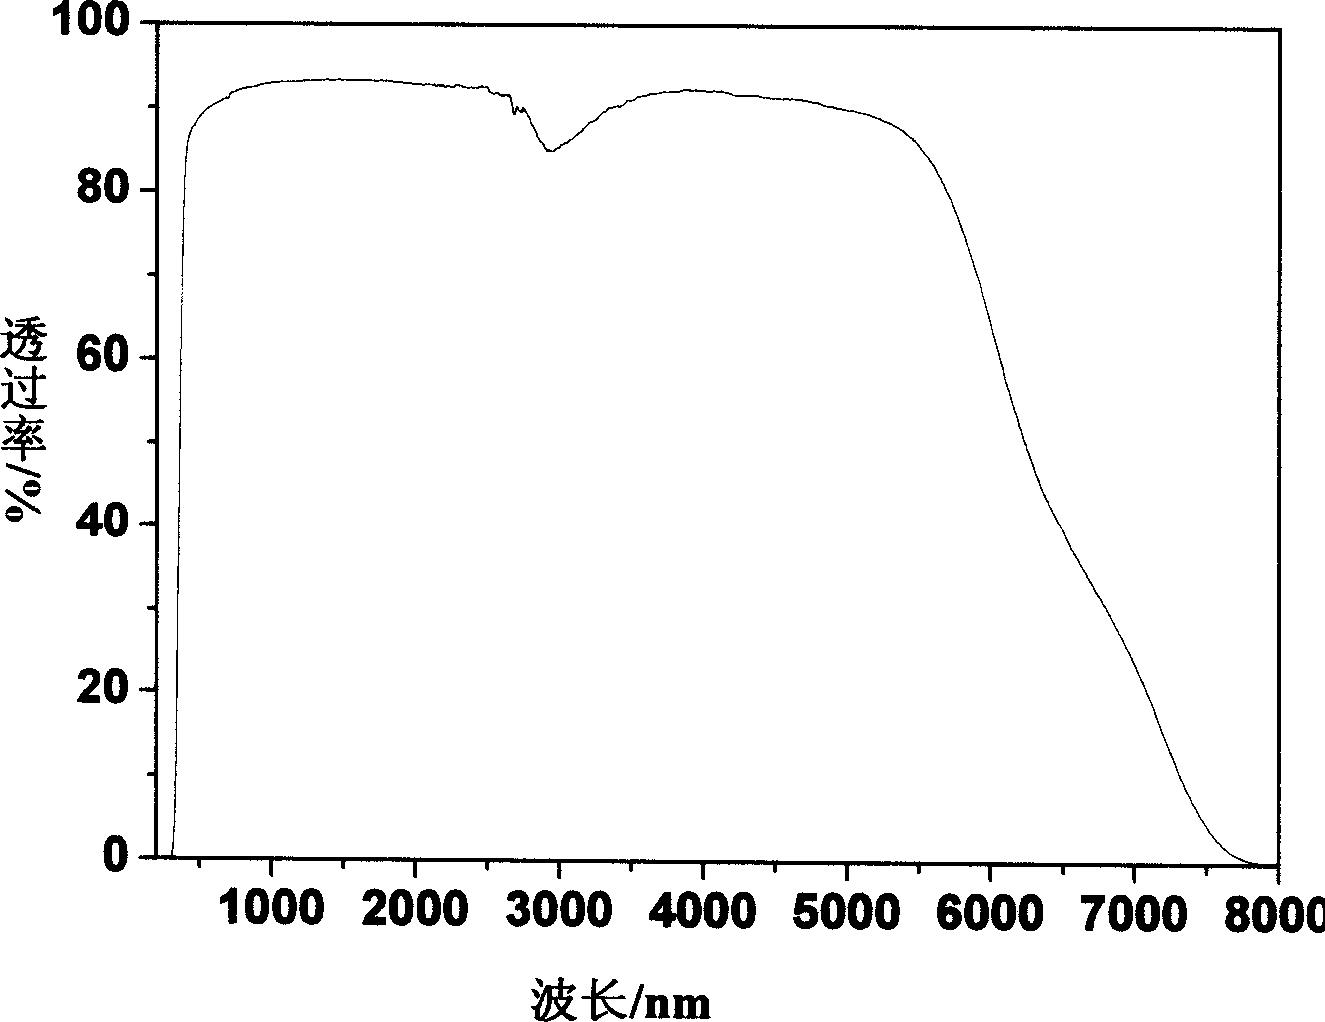 Fluorozirconate glass containing tellurium dioxide